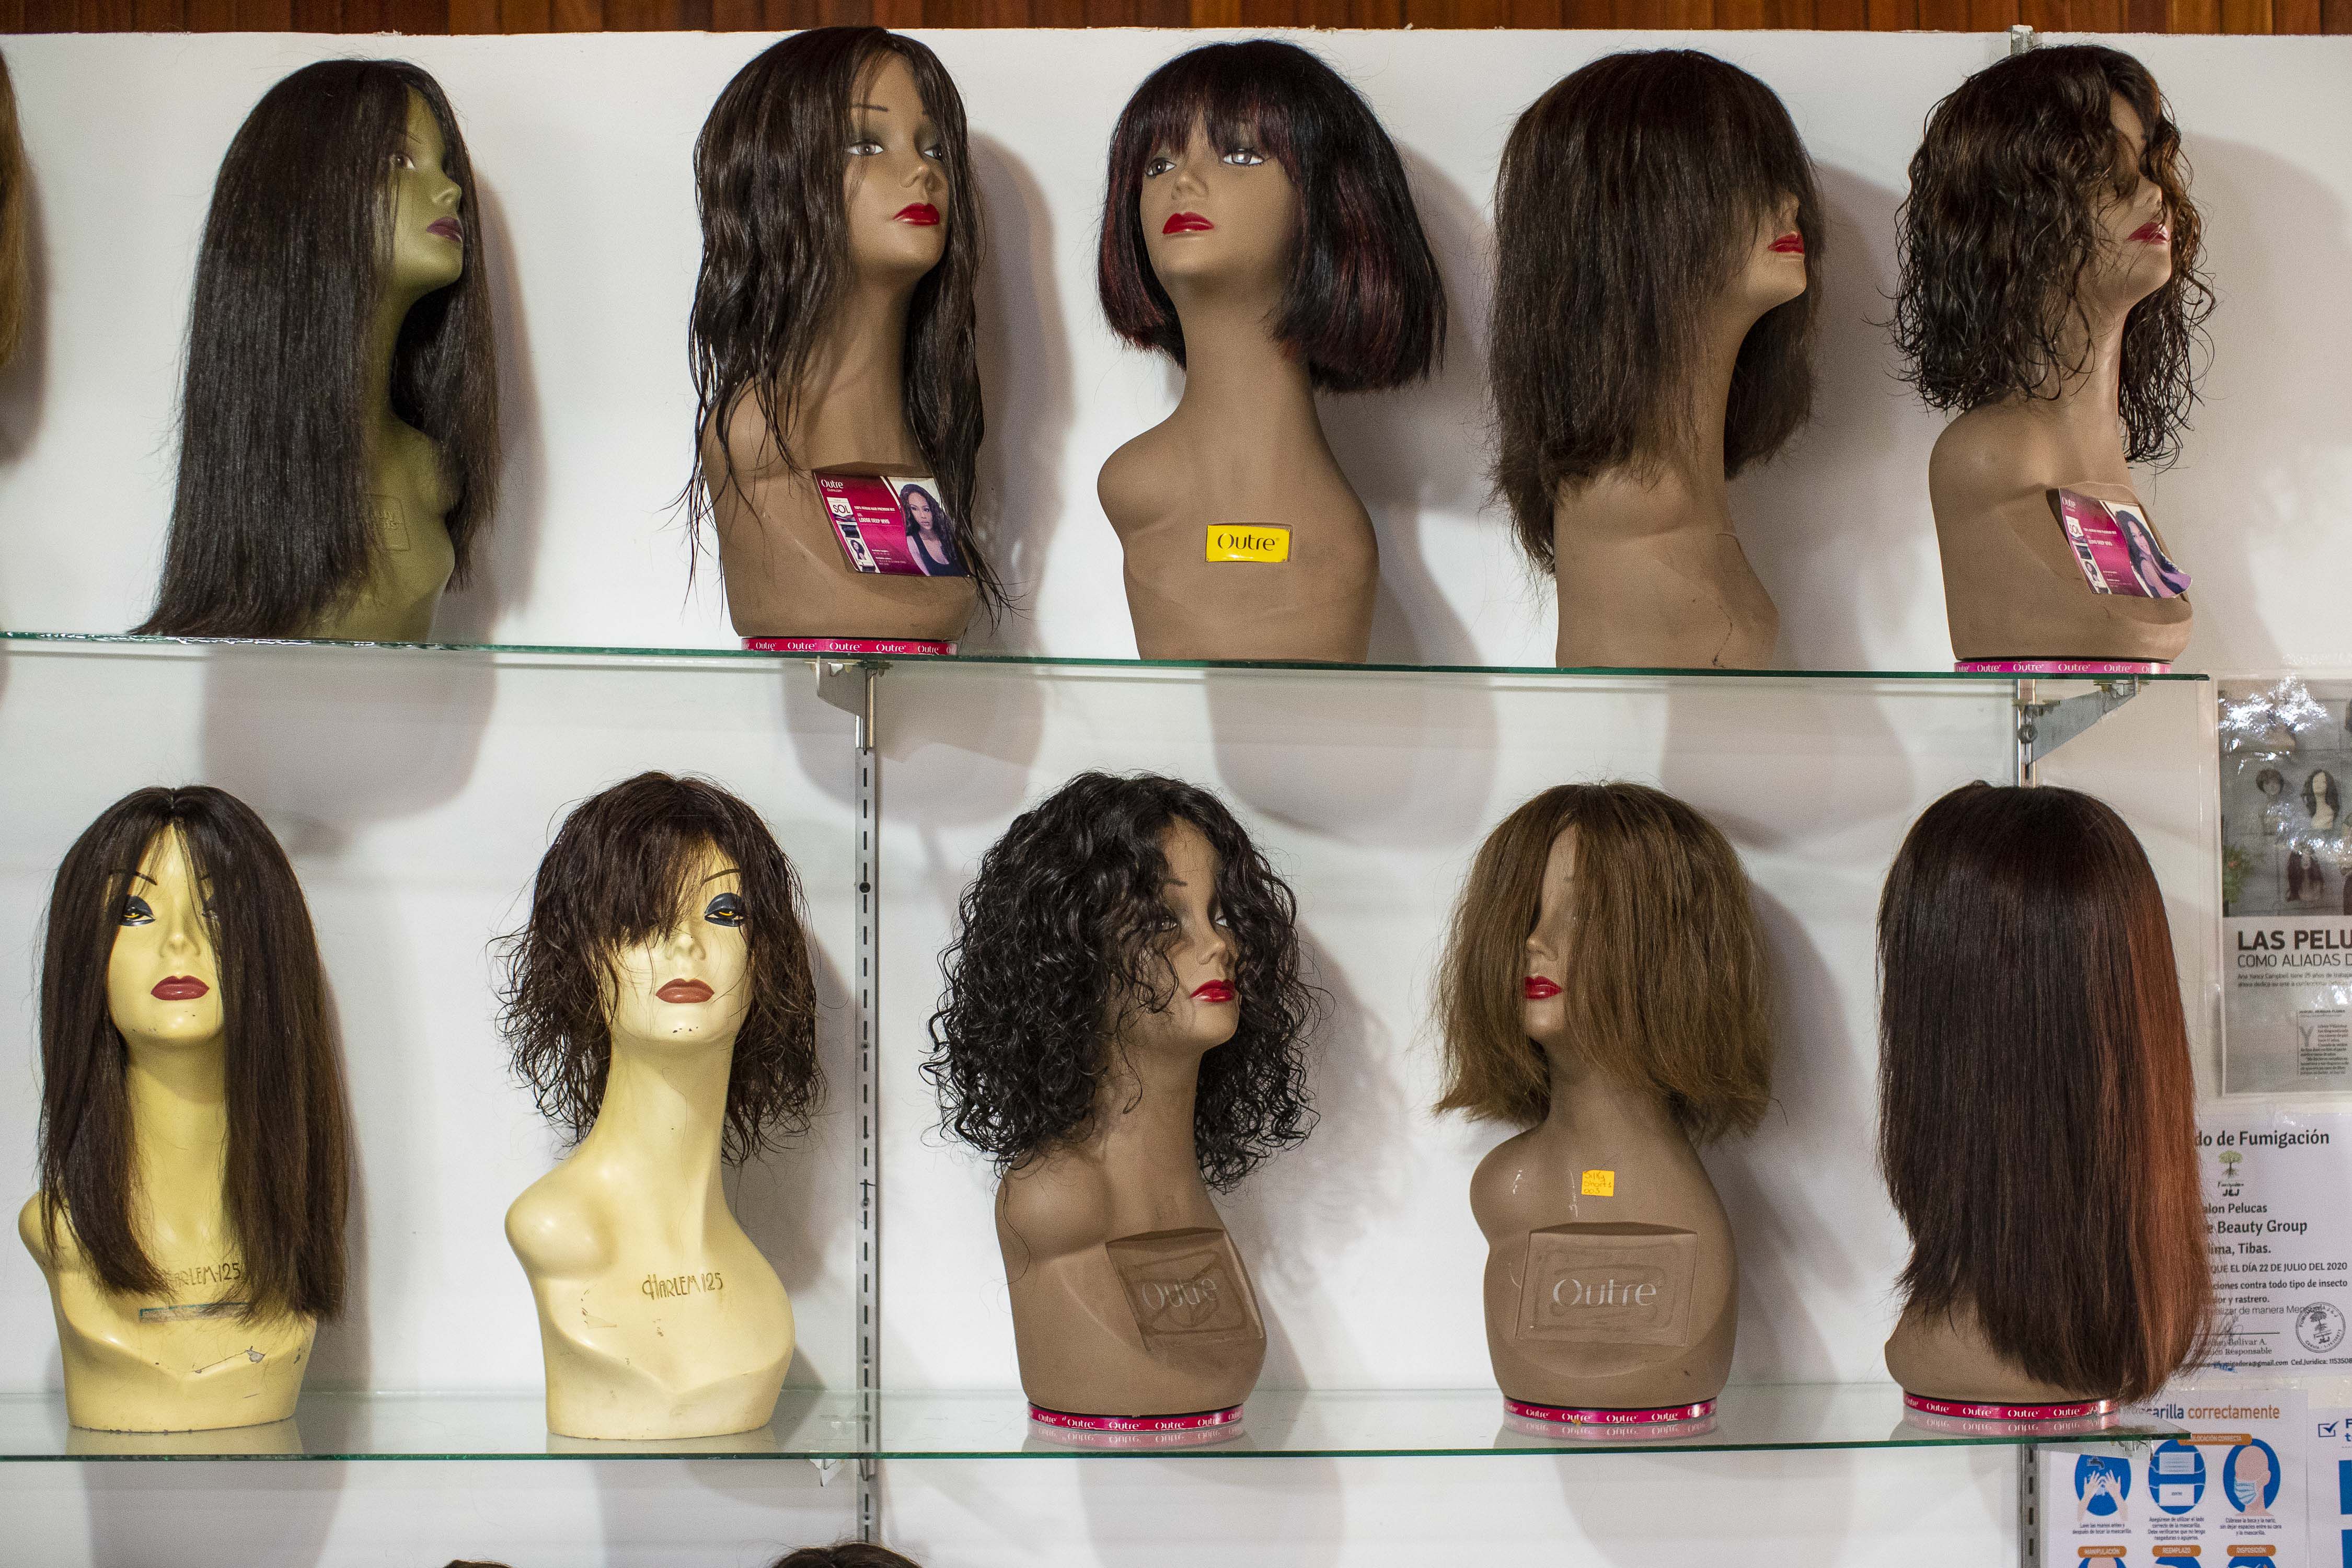 Tiene pelo largo? Dónelo a una paciente con cáncer: 'Las pelucas de cabello hacen que mujeres no se sientan disfrazadas' | La Nación